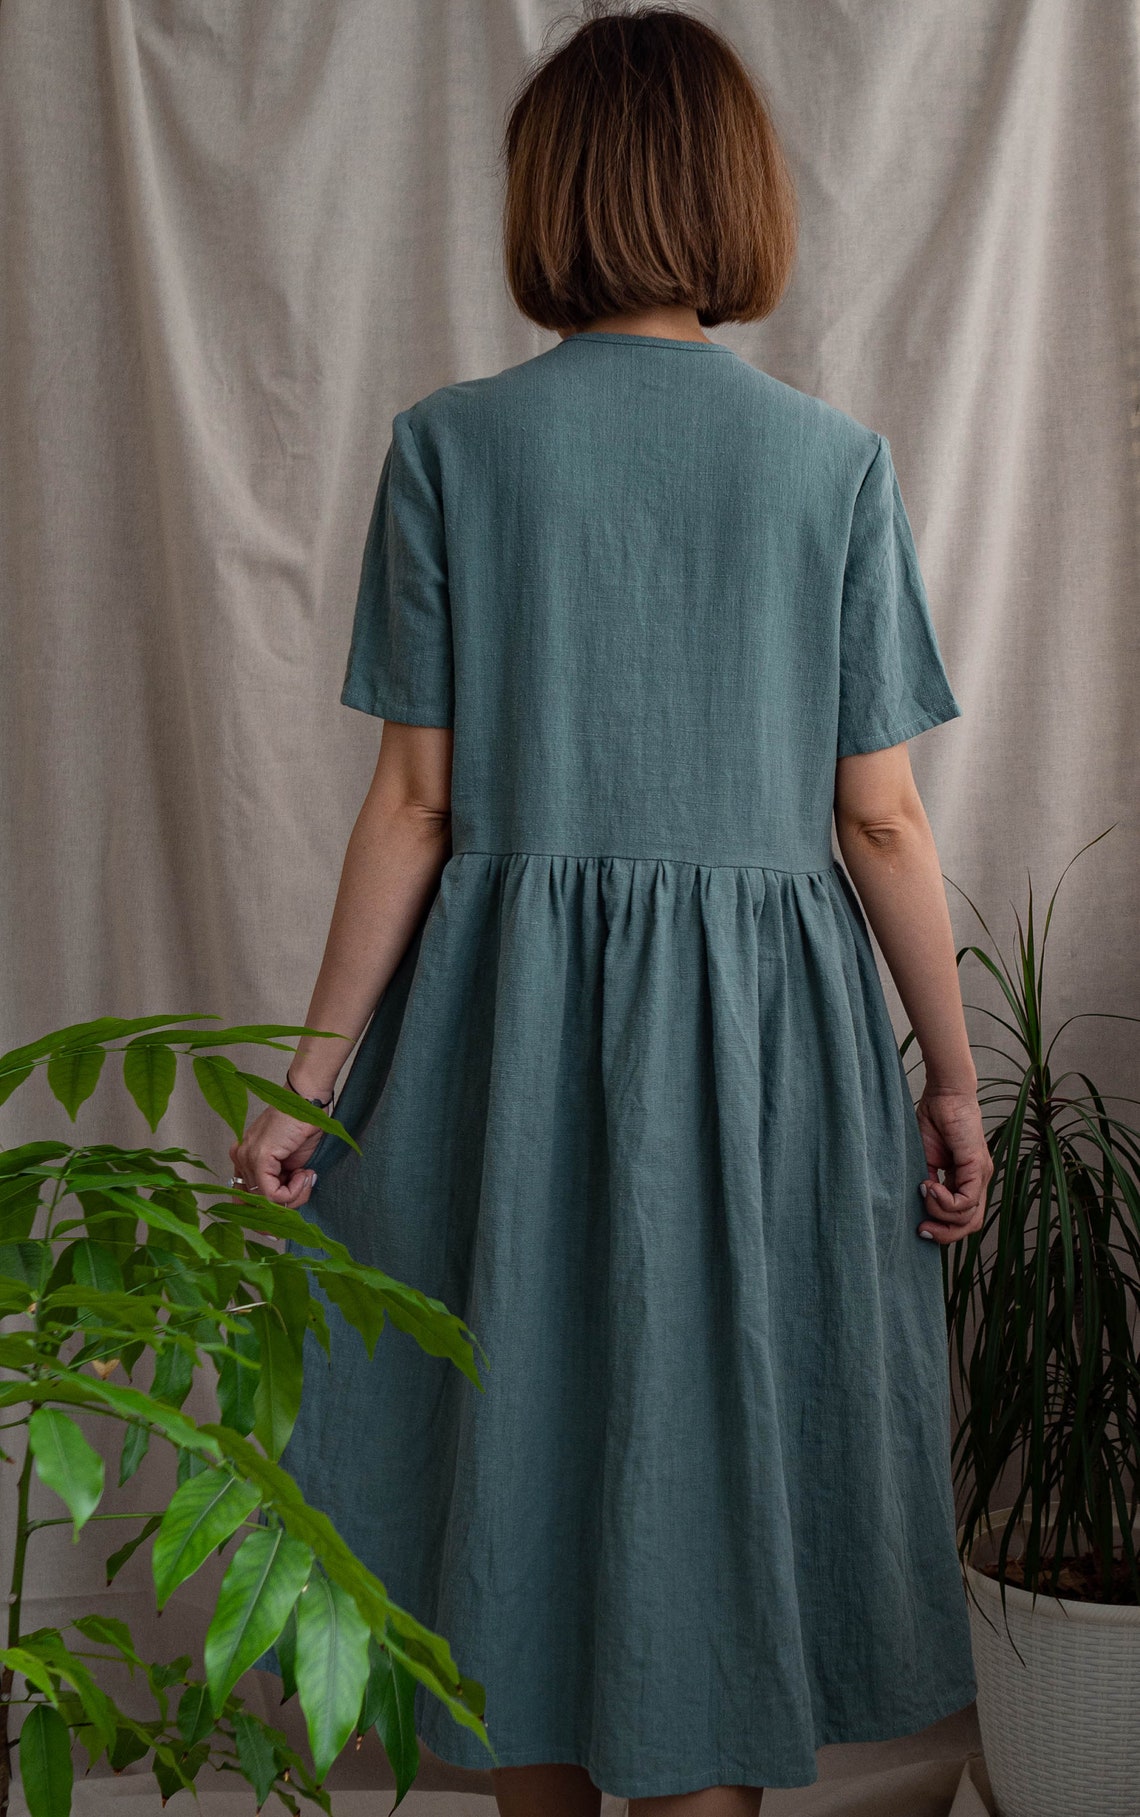 Dark green hemp cloth dress with buttonsHERBS /Summer dress / | Etsy